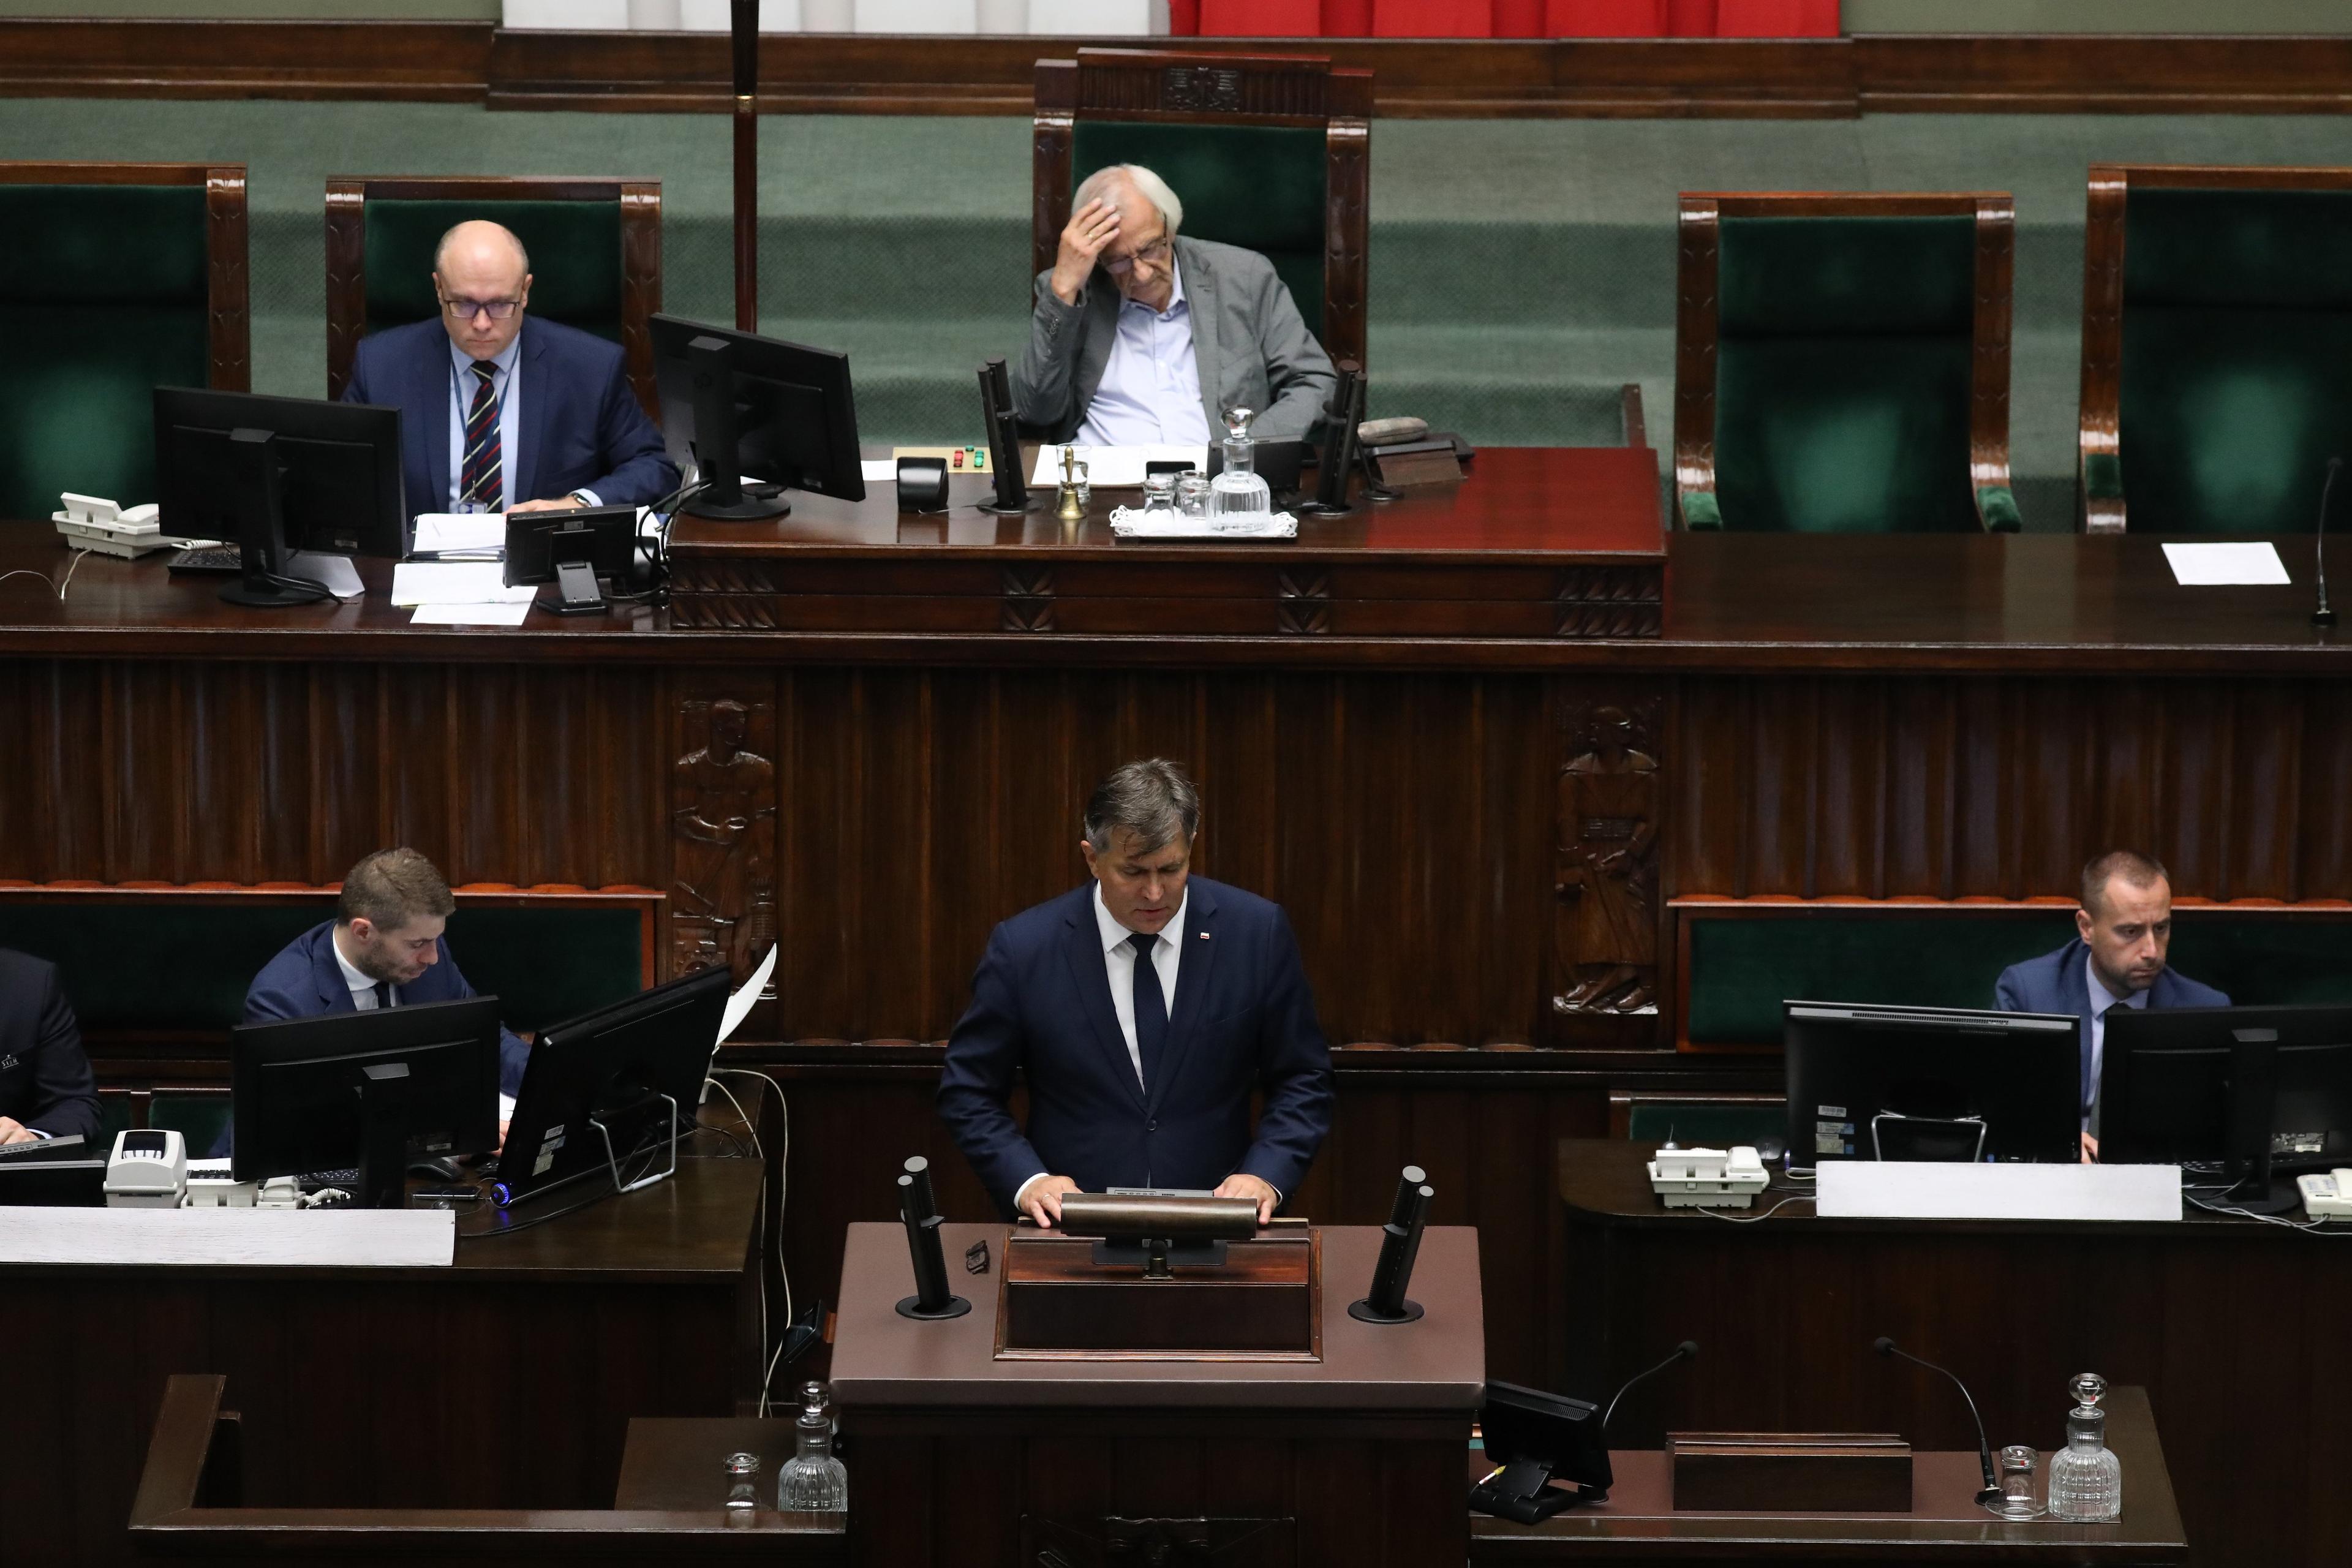 Obrady Sejmu Siwowłosy mężczyzna (prowadzący pbrady wicemarszałek Terlecki z PiS) trzyma się za głowę. Na mównicy męzczyzna w garniturze (poseł)